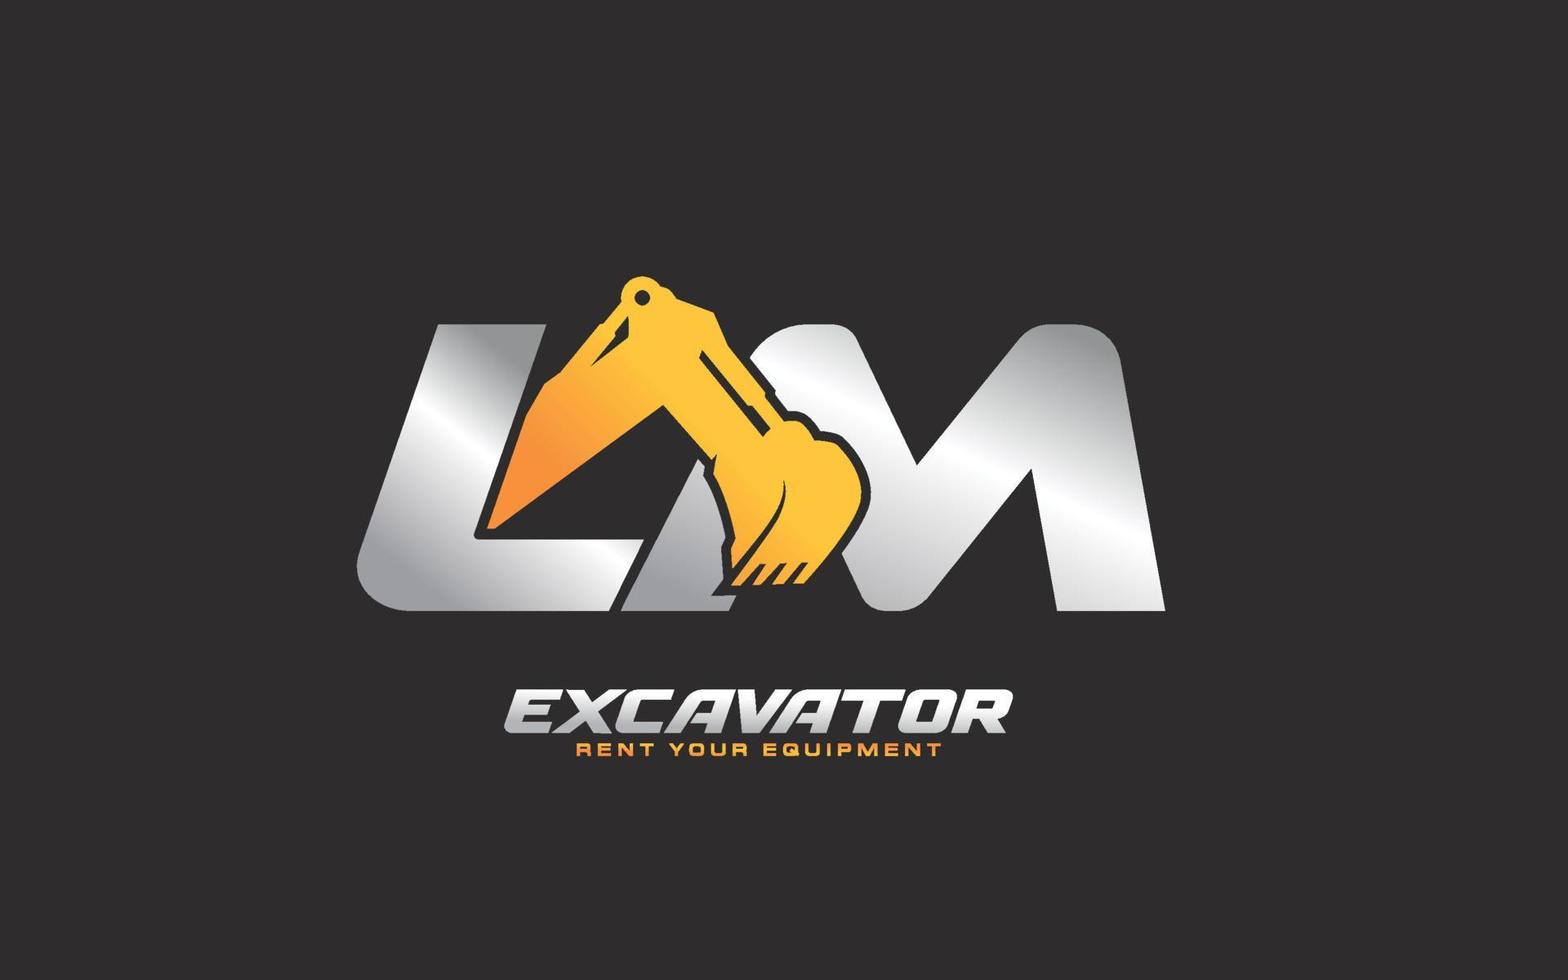 Excavadora de logotipo lm para empresa constructora. ilustración de vector de plantilla de equipo pesado para su marca.